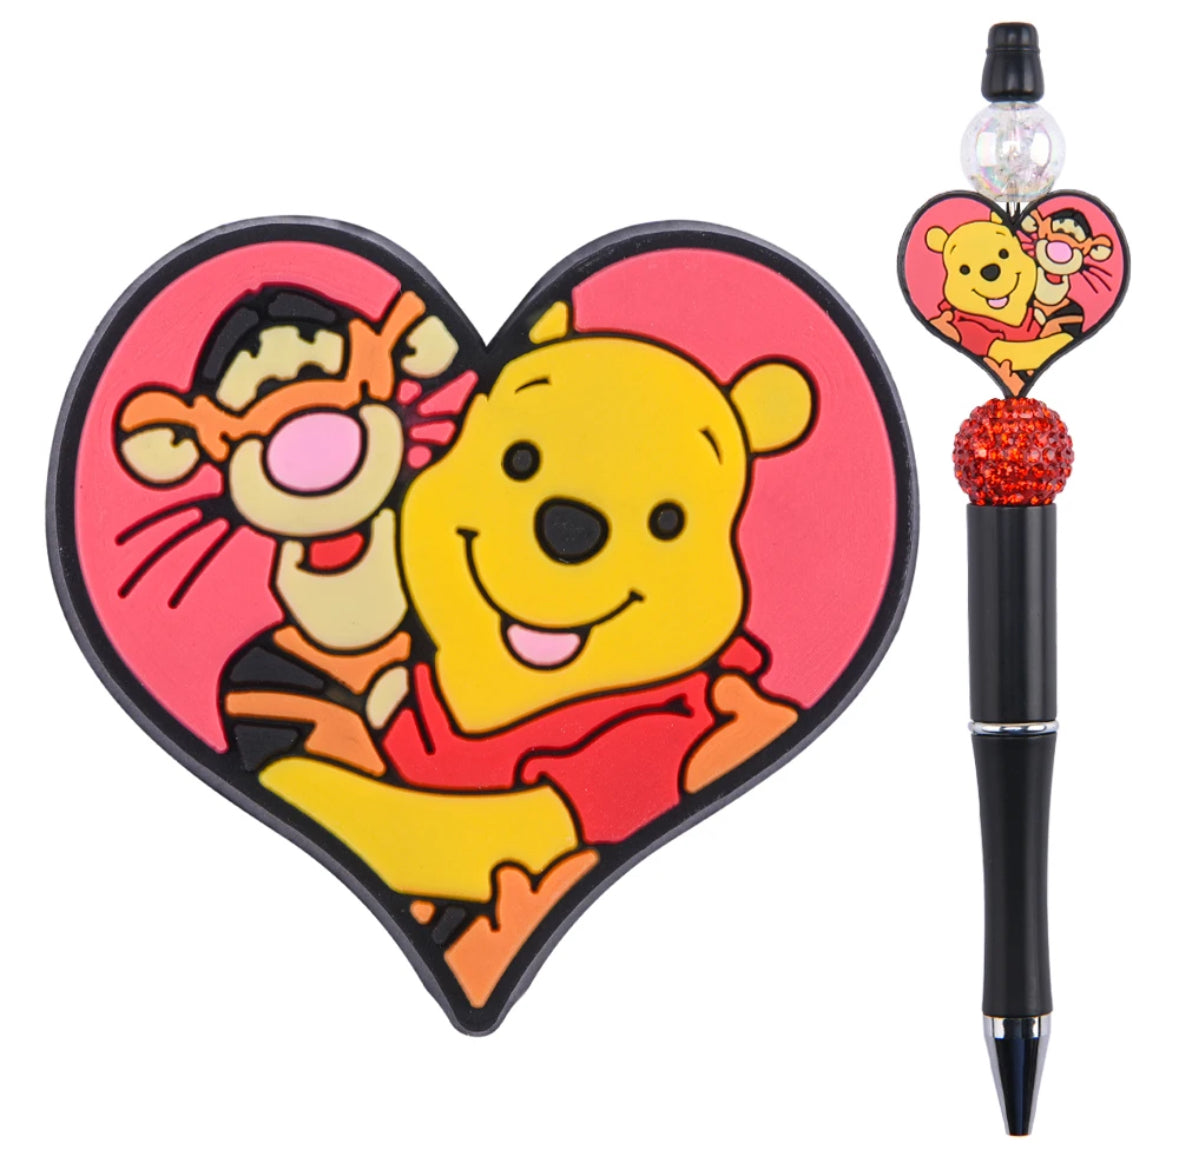 Tiger & Pooh pen